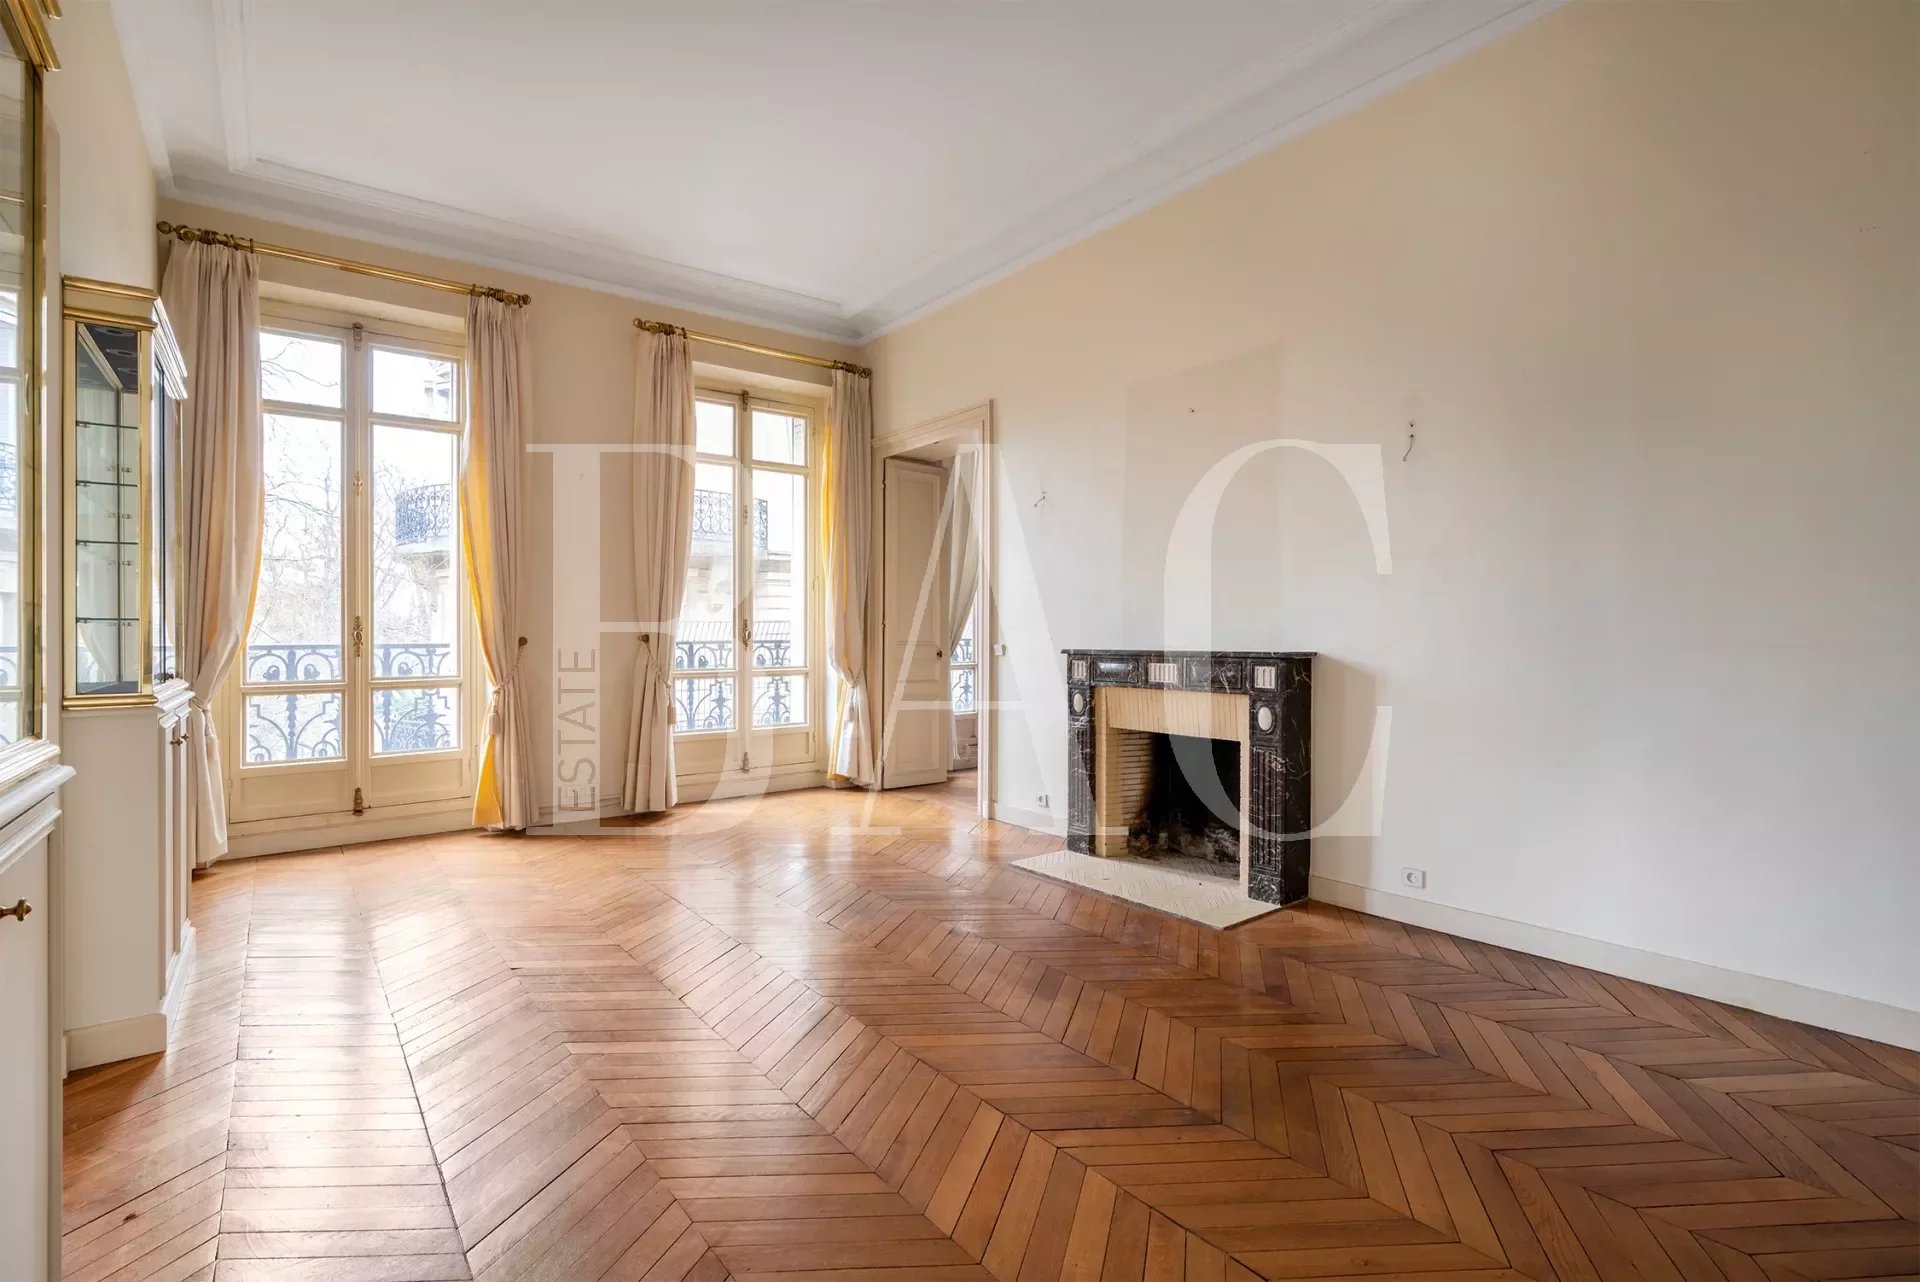 出售 公寓 - Paris 16ème Porte-Dauphine